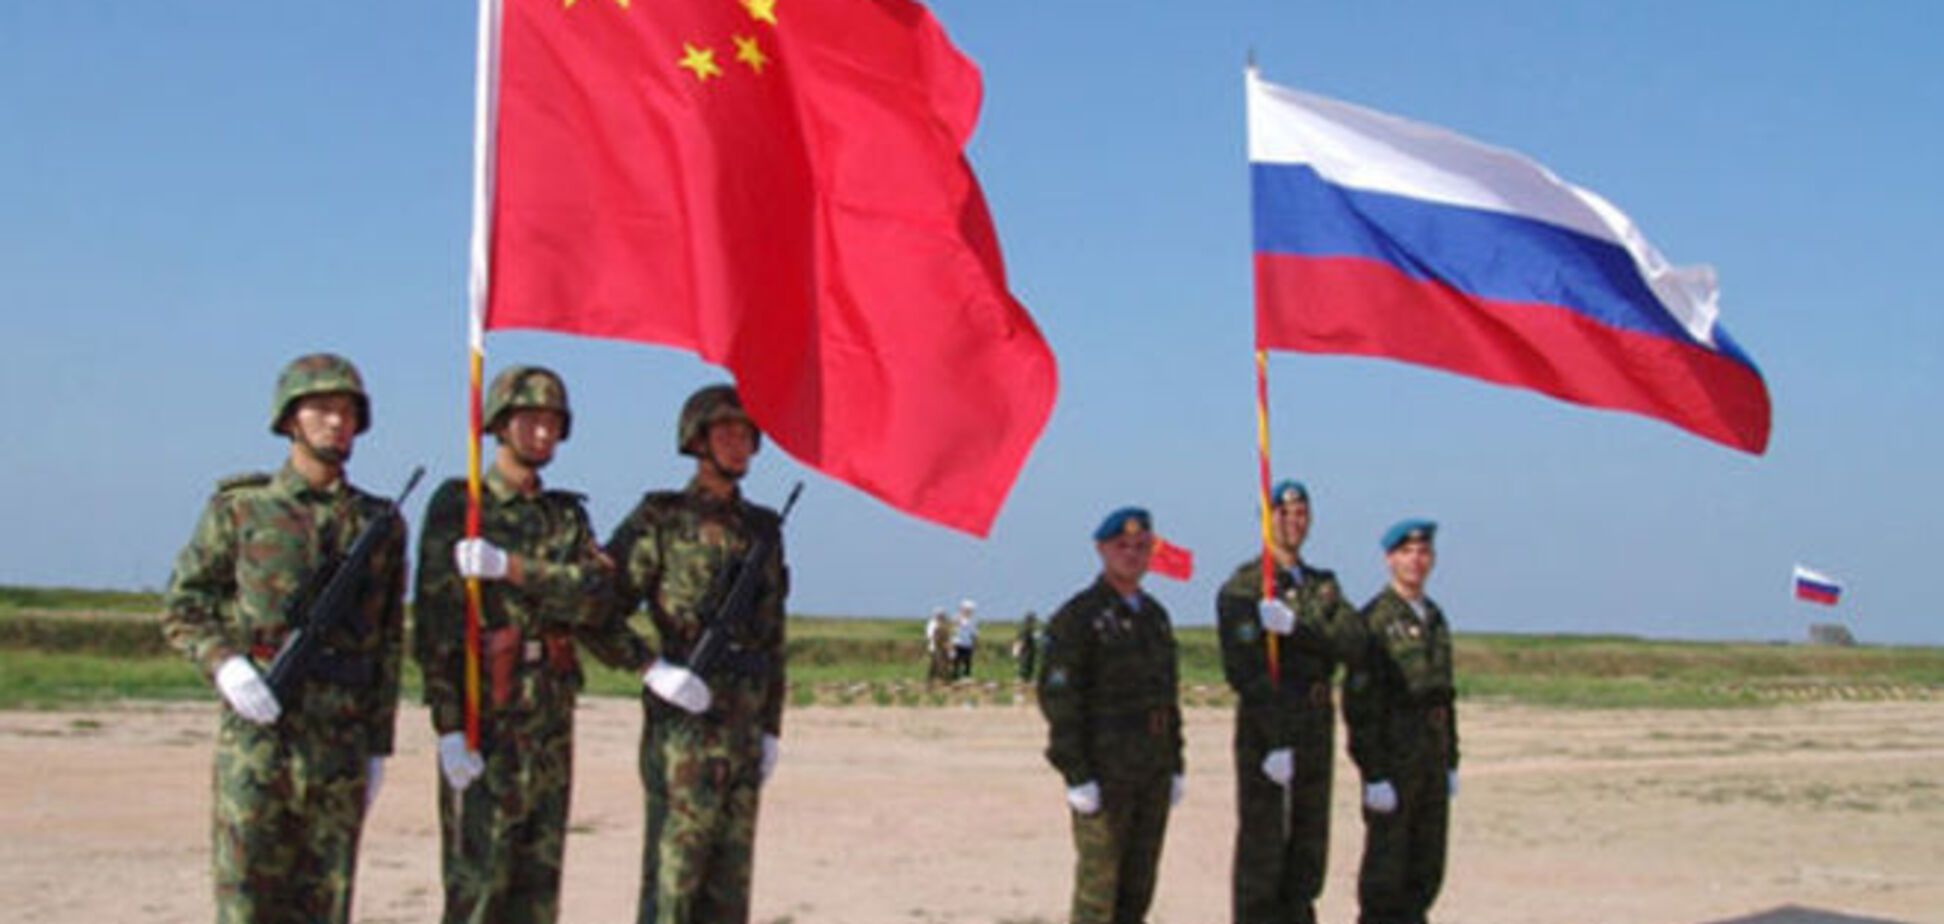 Під час саміту G20 Шойгу домовлявся з Китаєм про військове співробітництво